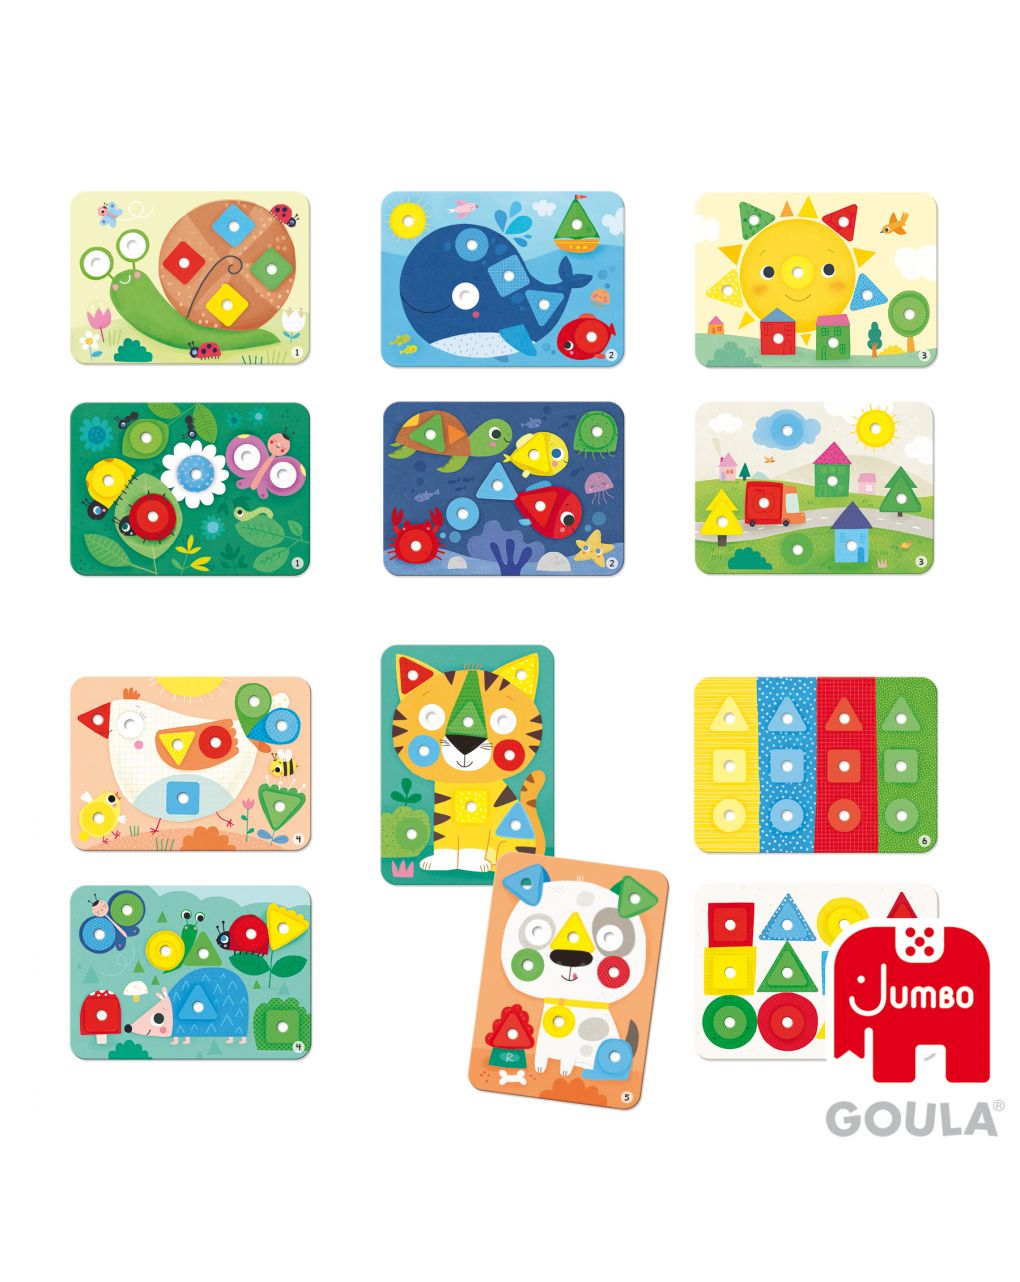 Puzzle baby shapes - goula - Goula